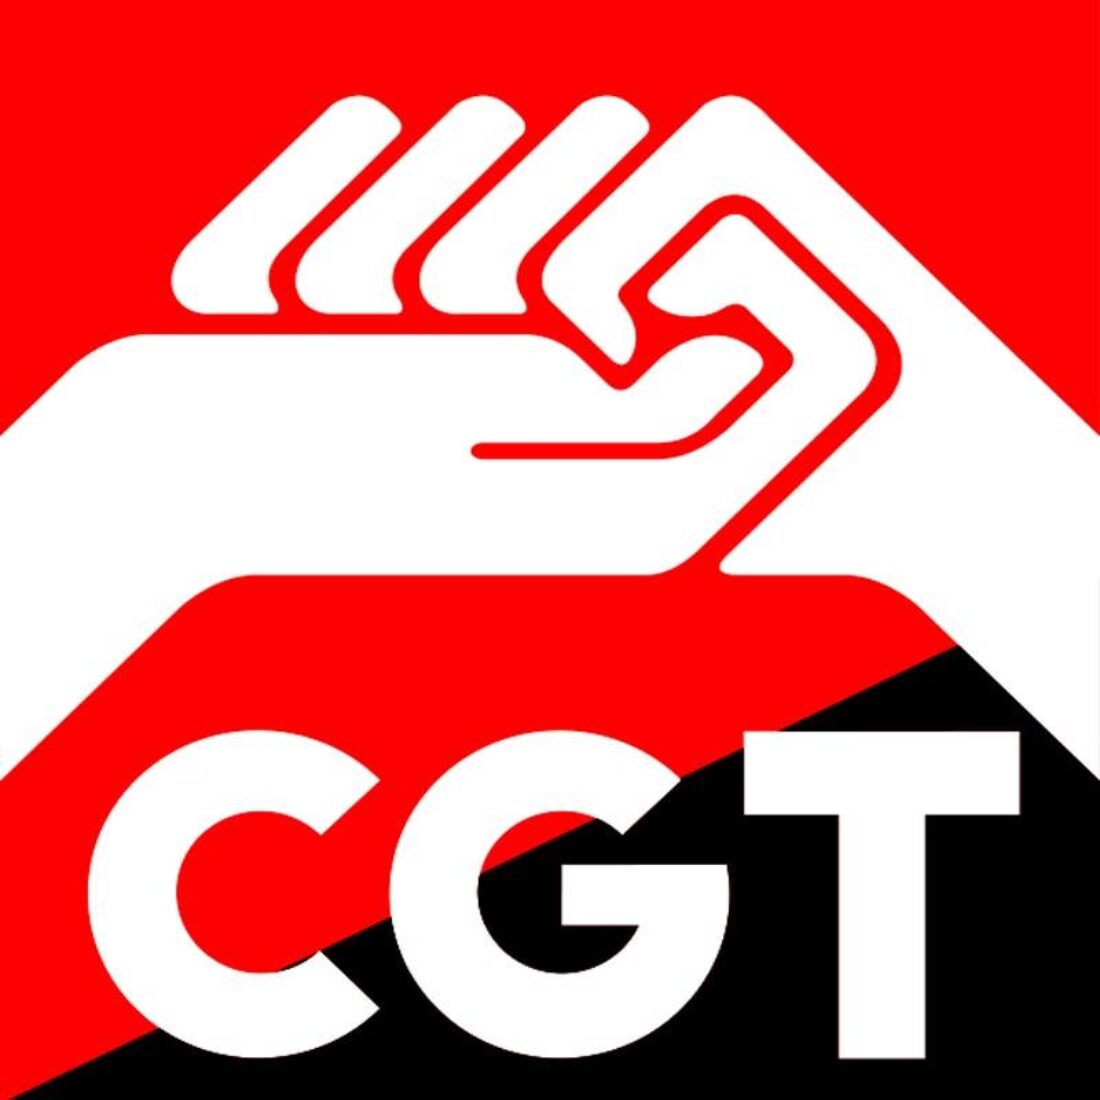 CGT desmiente presiones para desconvocar actos públicos y no descarta tomar medidas legales contra la Guardia Civil por manipular las declaraciones de un sindicalista